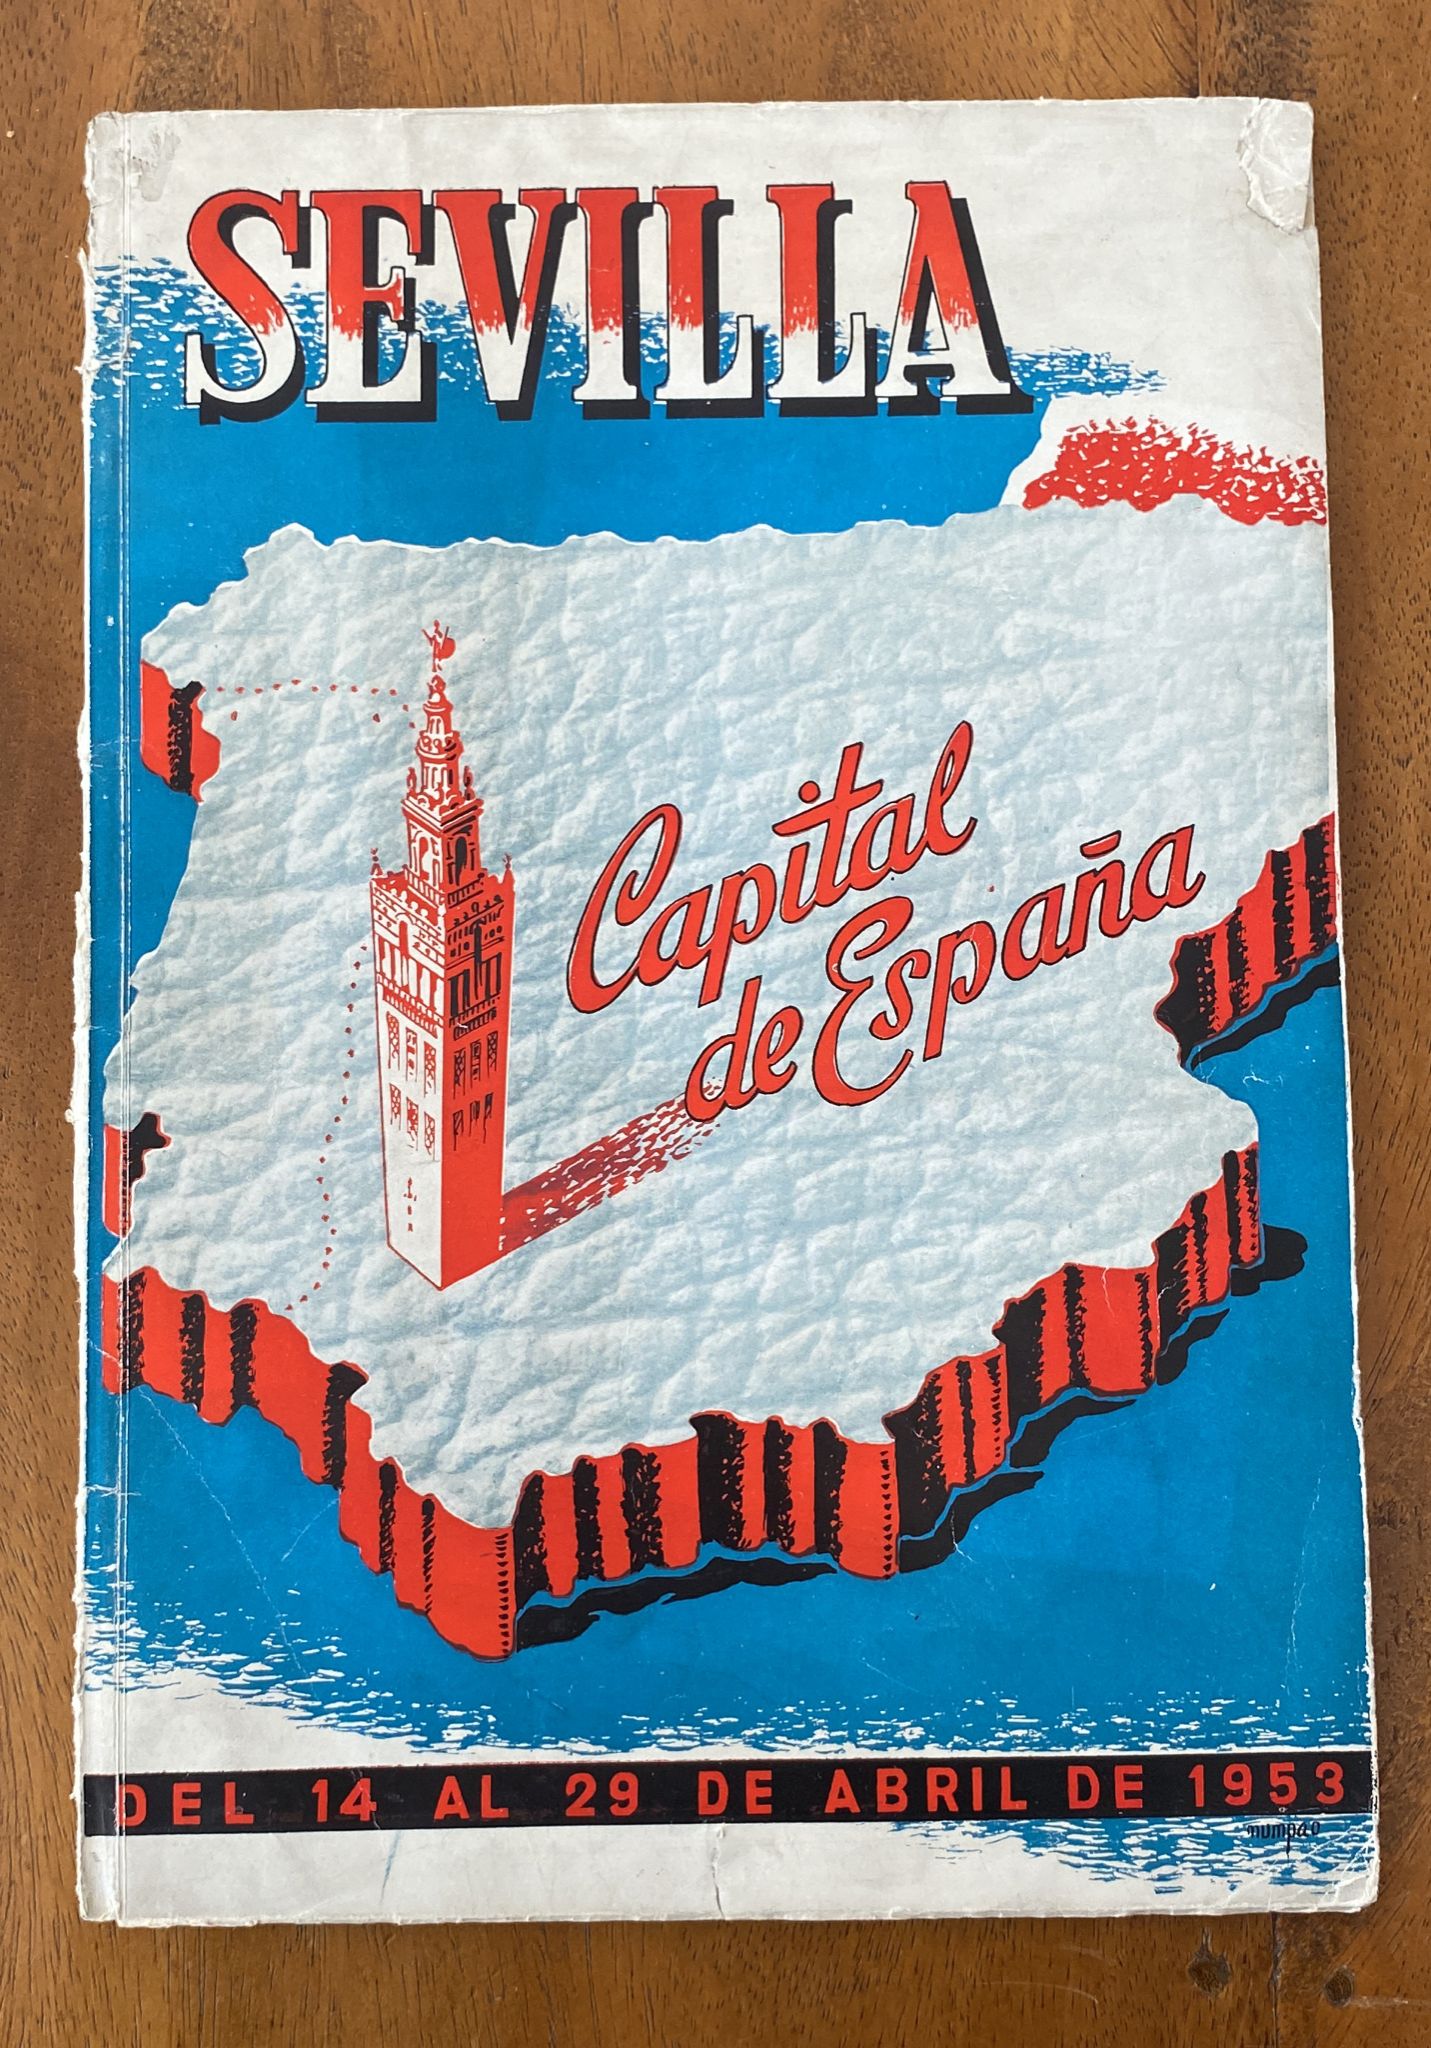 Sevilla. Capital de España. Visita del Caudillo a Sevilla del 14 al 29 Mayo de 1953